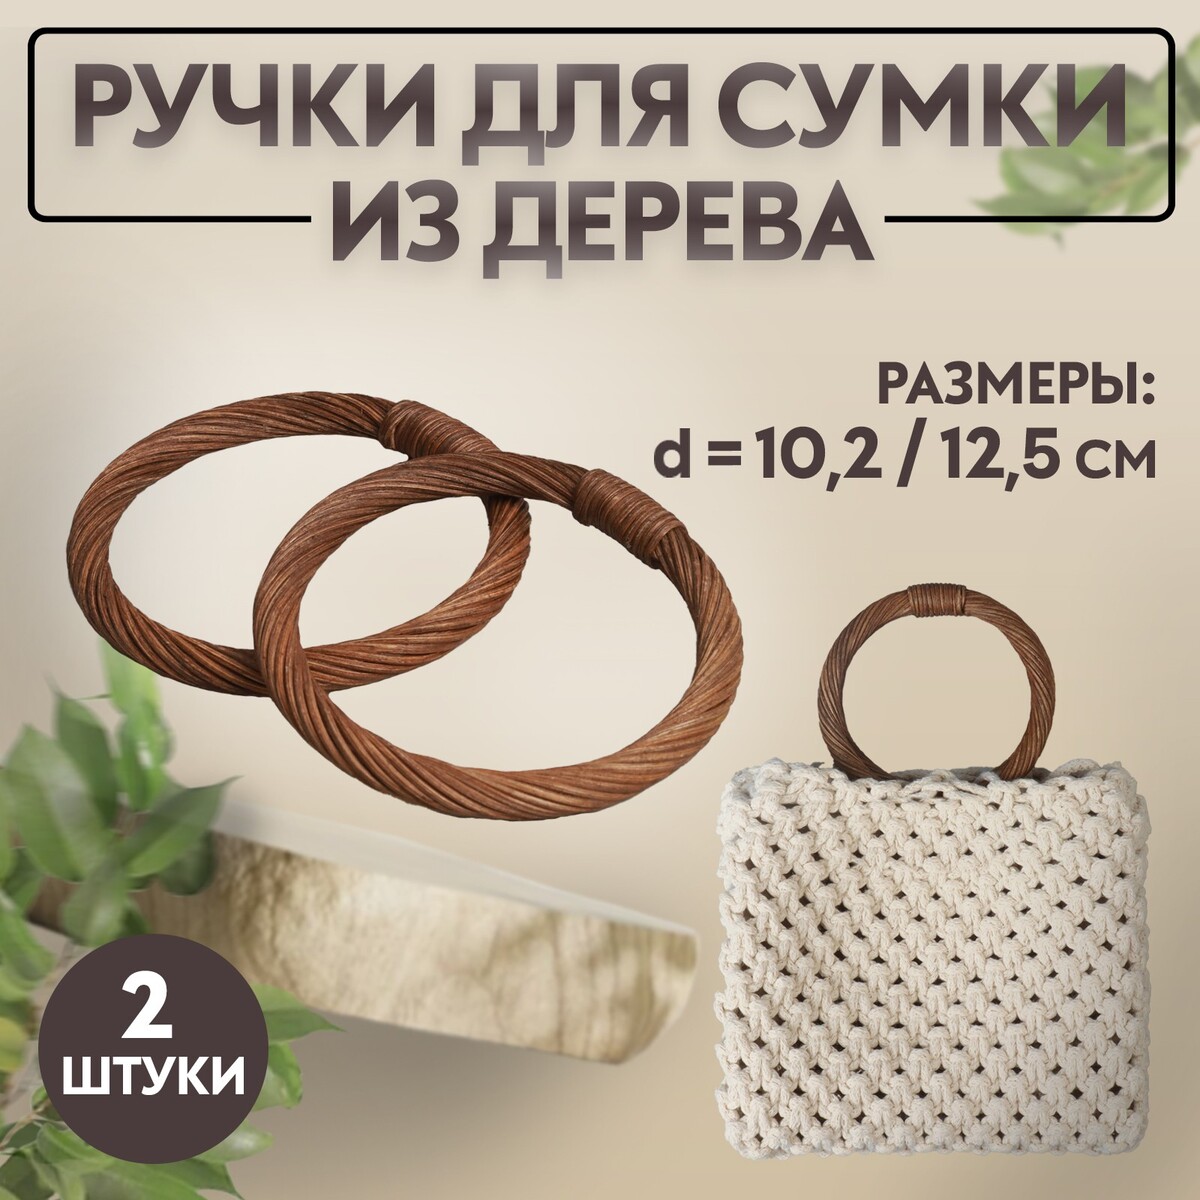 Ручки для сумки деревянные, плетеные, d = 10,2 / 12,5 см, 2 шт, цвет коричневый